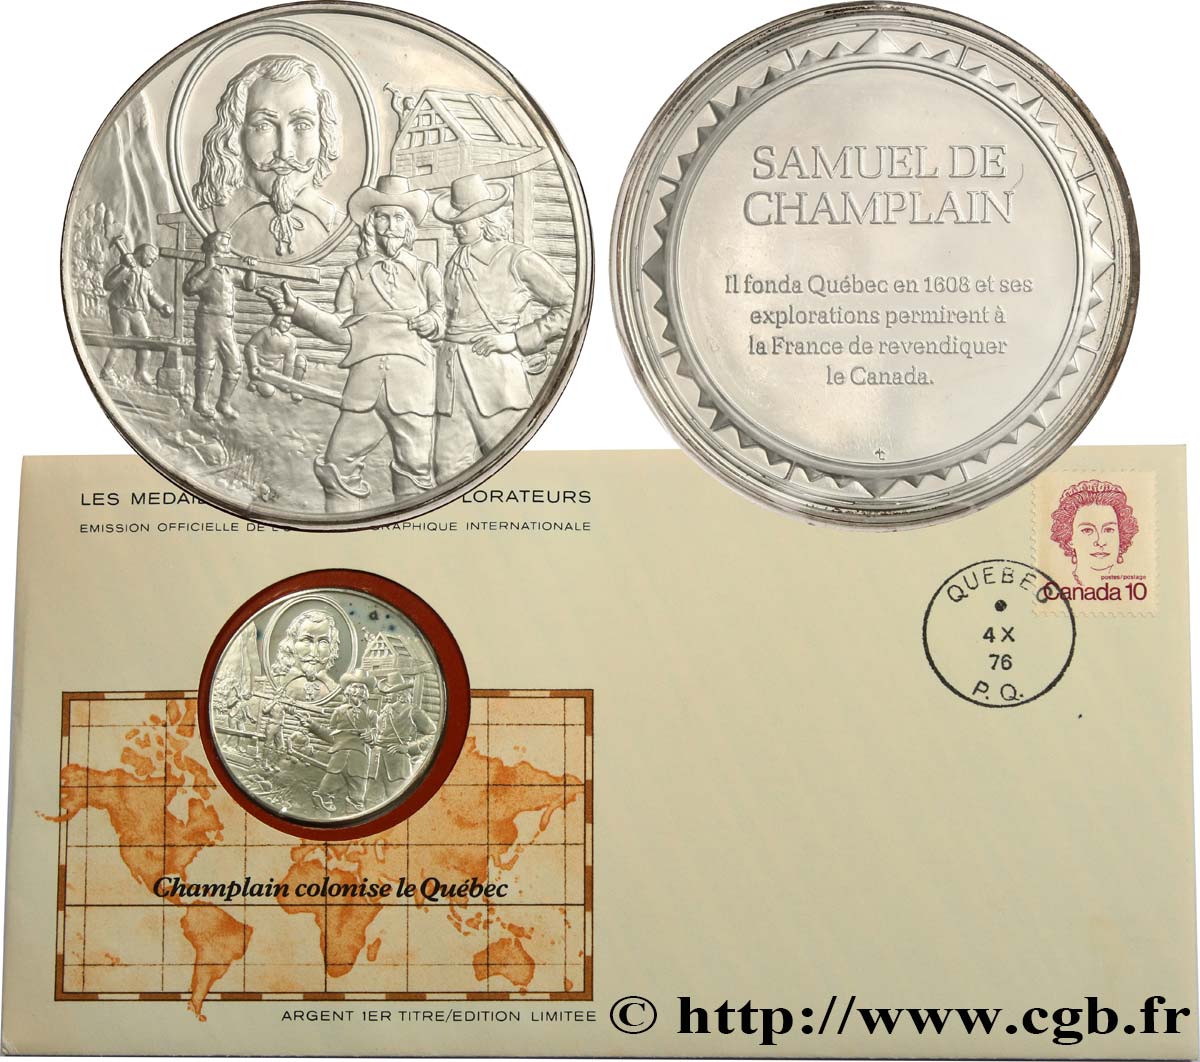 THE GREAT EXPLORERS  MEDALS Enveloppe “Timbre médaille”, Champlain colonise le Québec fST